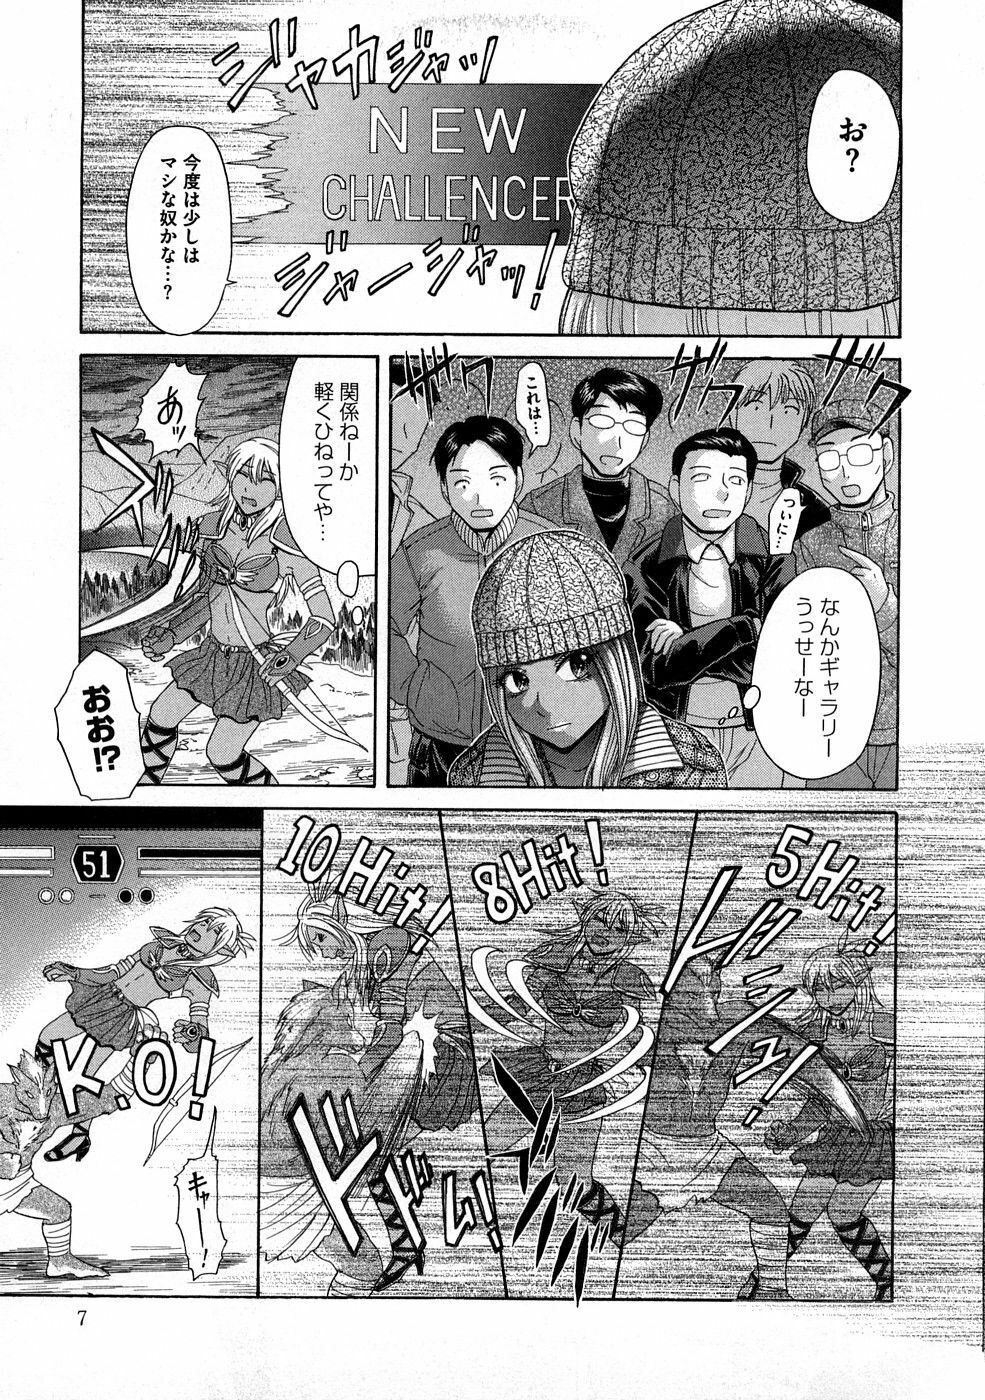 [Kogaino] Yabakune page 8 full